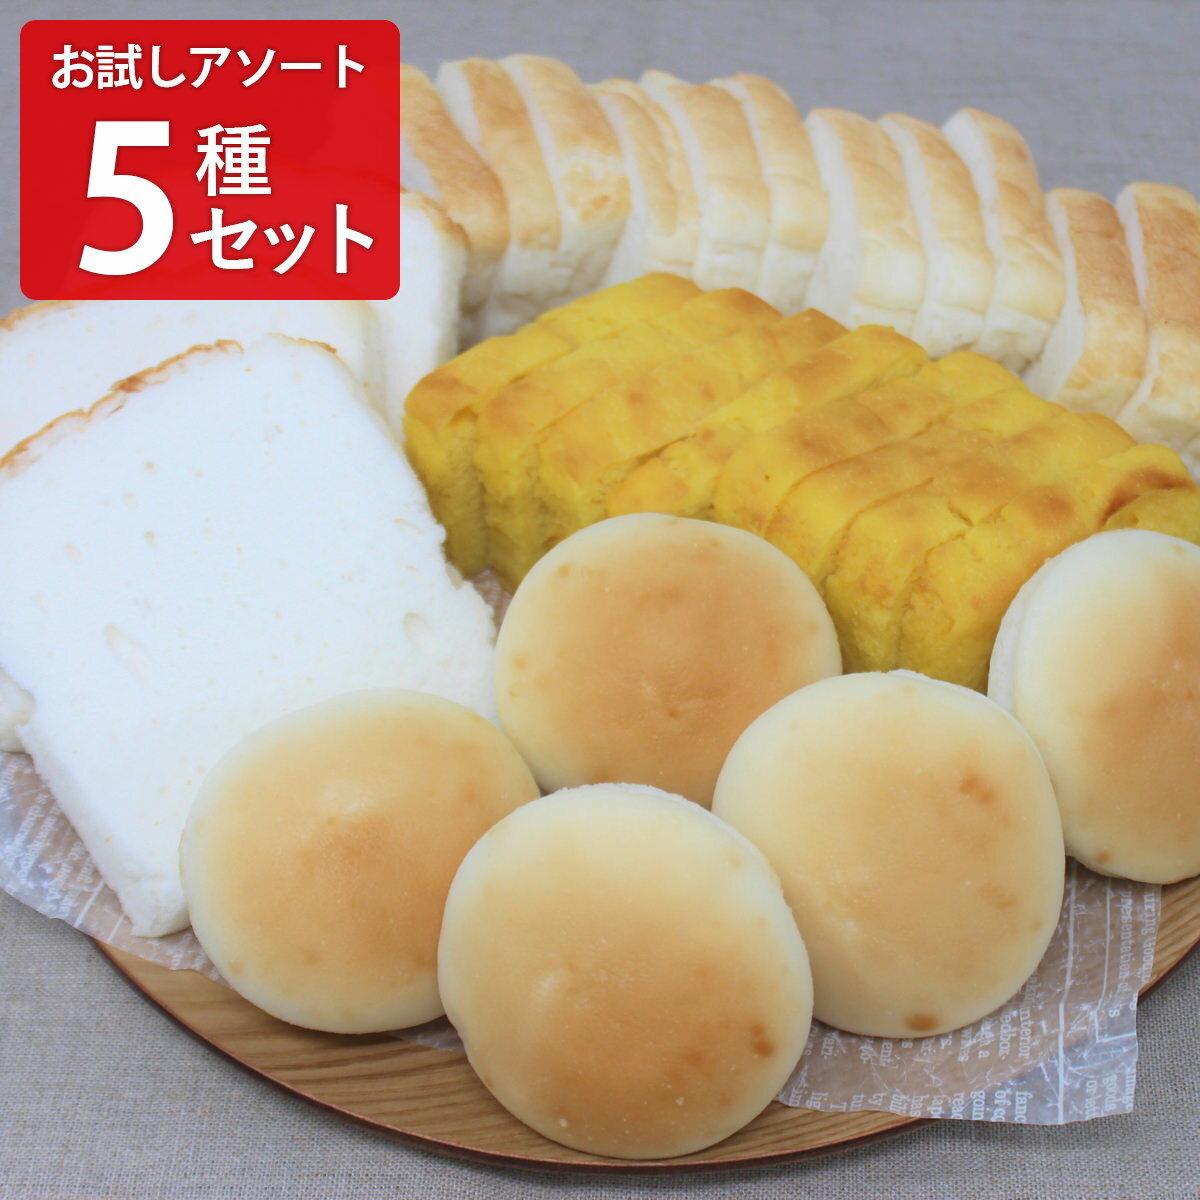 米粉パン みんなの食卓 米粉パン お試しアソート5種セット パン グルテンフリー 米粉パン 冷凍パン 食パン 食事パン アレルギー対応 お米パン